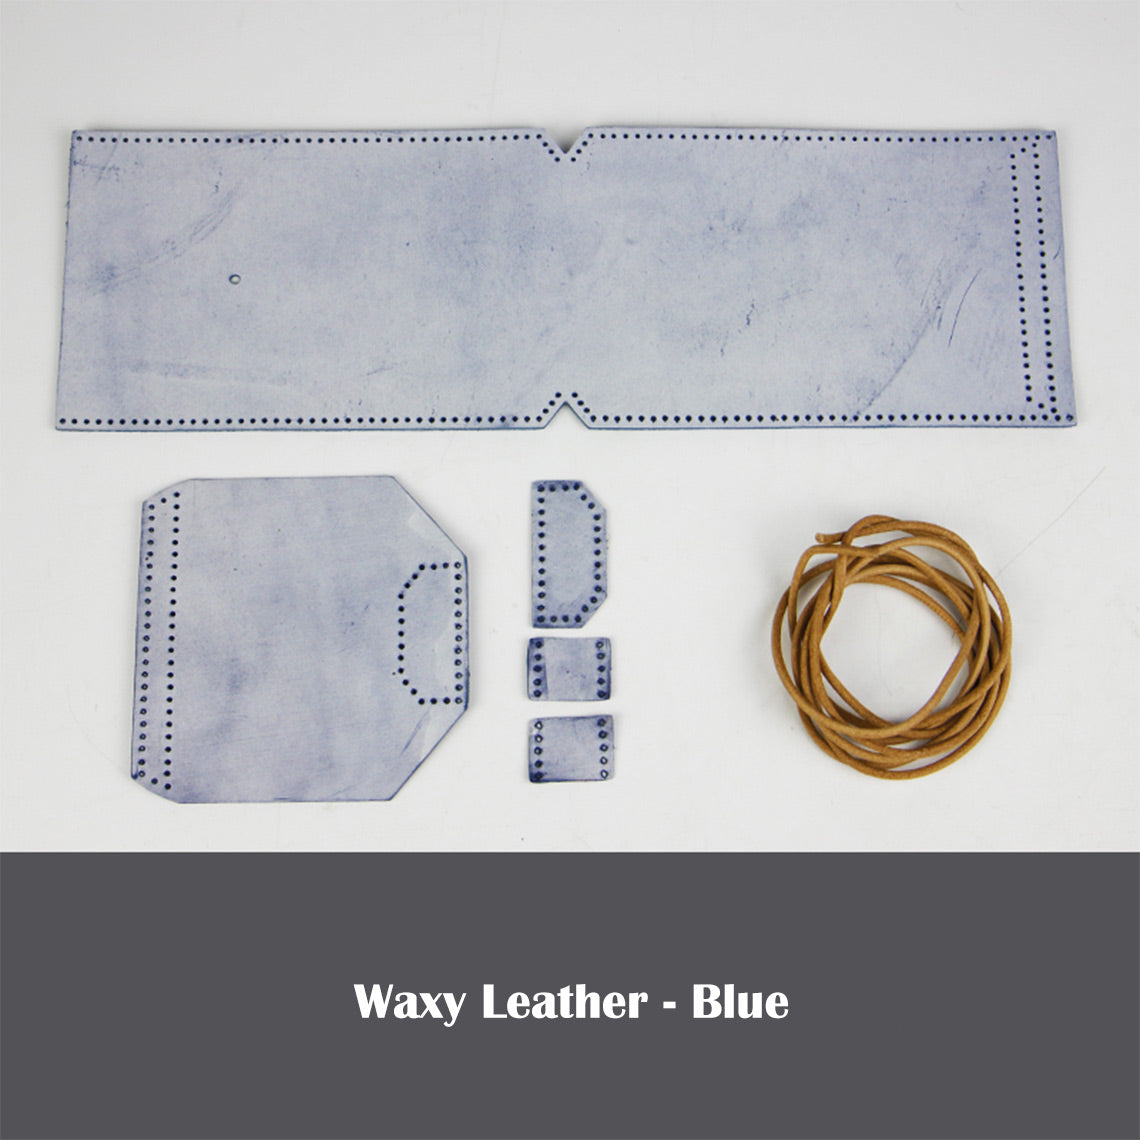 Blue Leather Phone Bag Kit | DIY Bag Kits - POPSEWING®